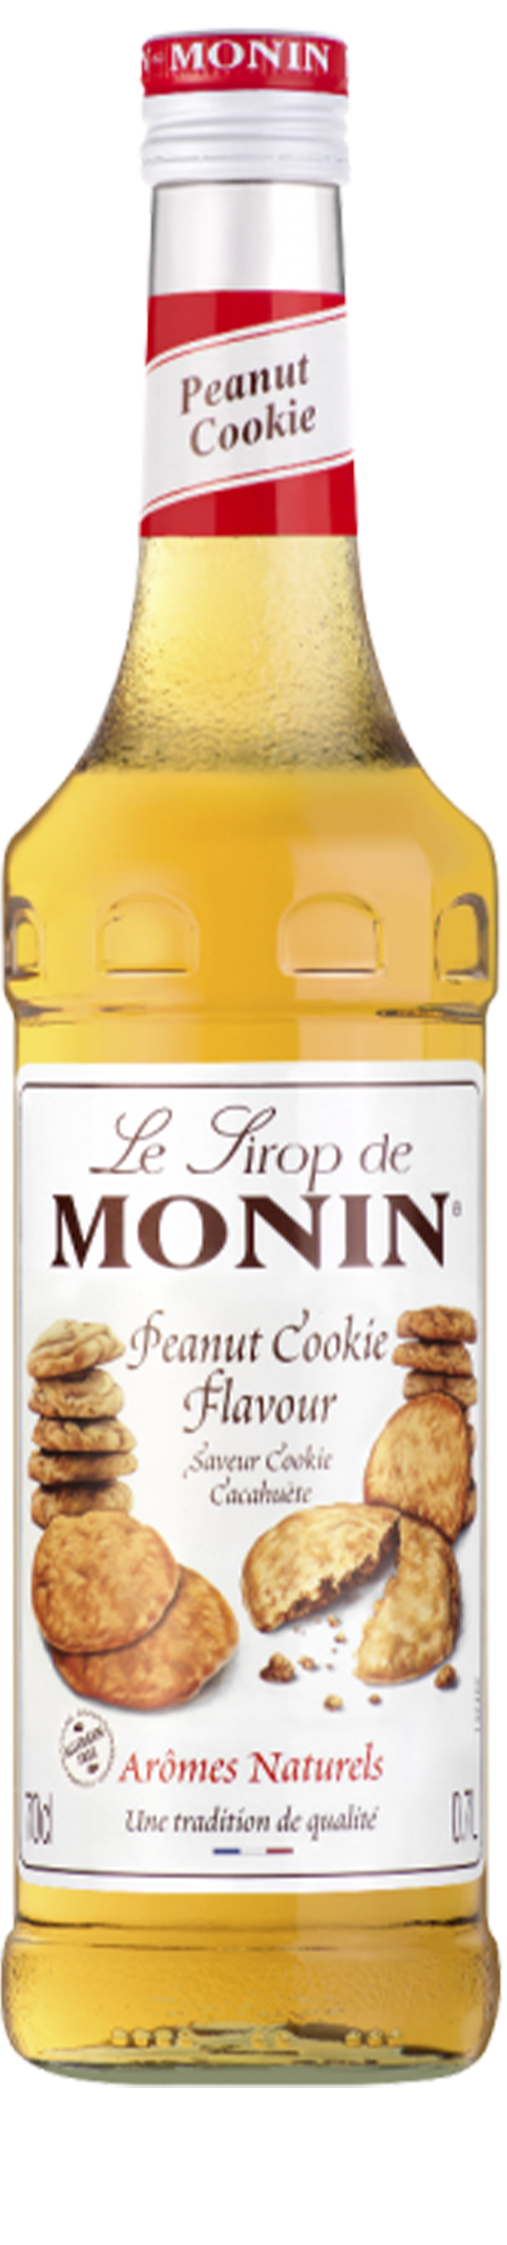 Le Sirop de MONIN Peanut cookie 0.7L